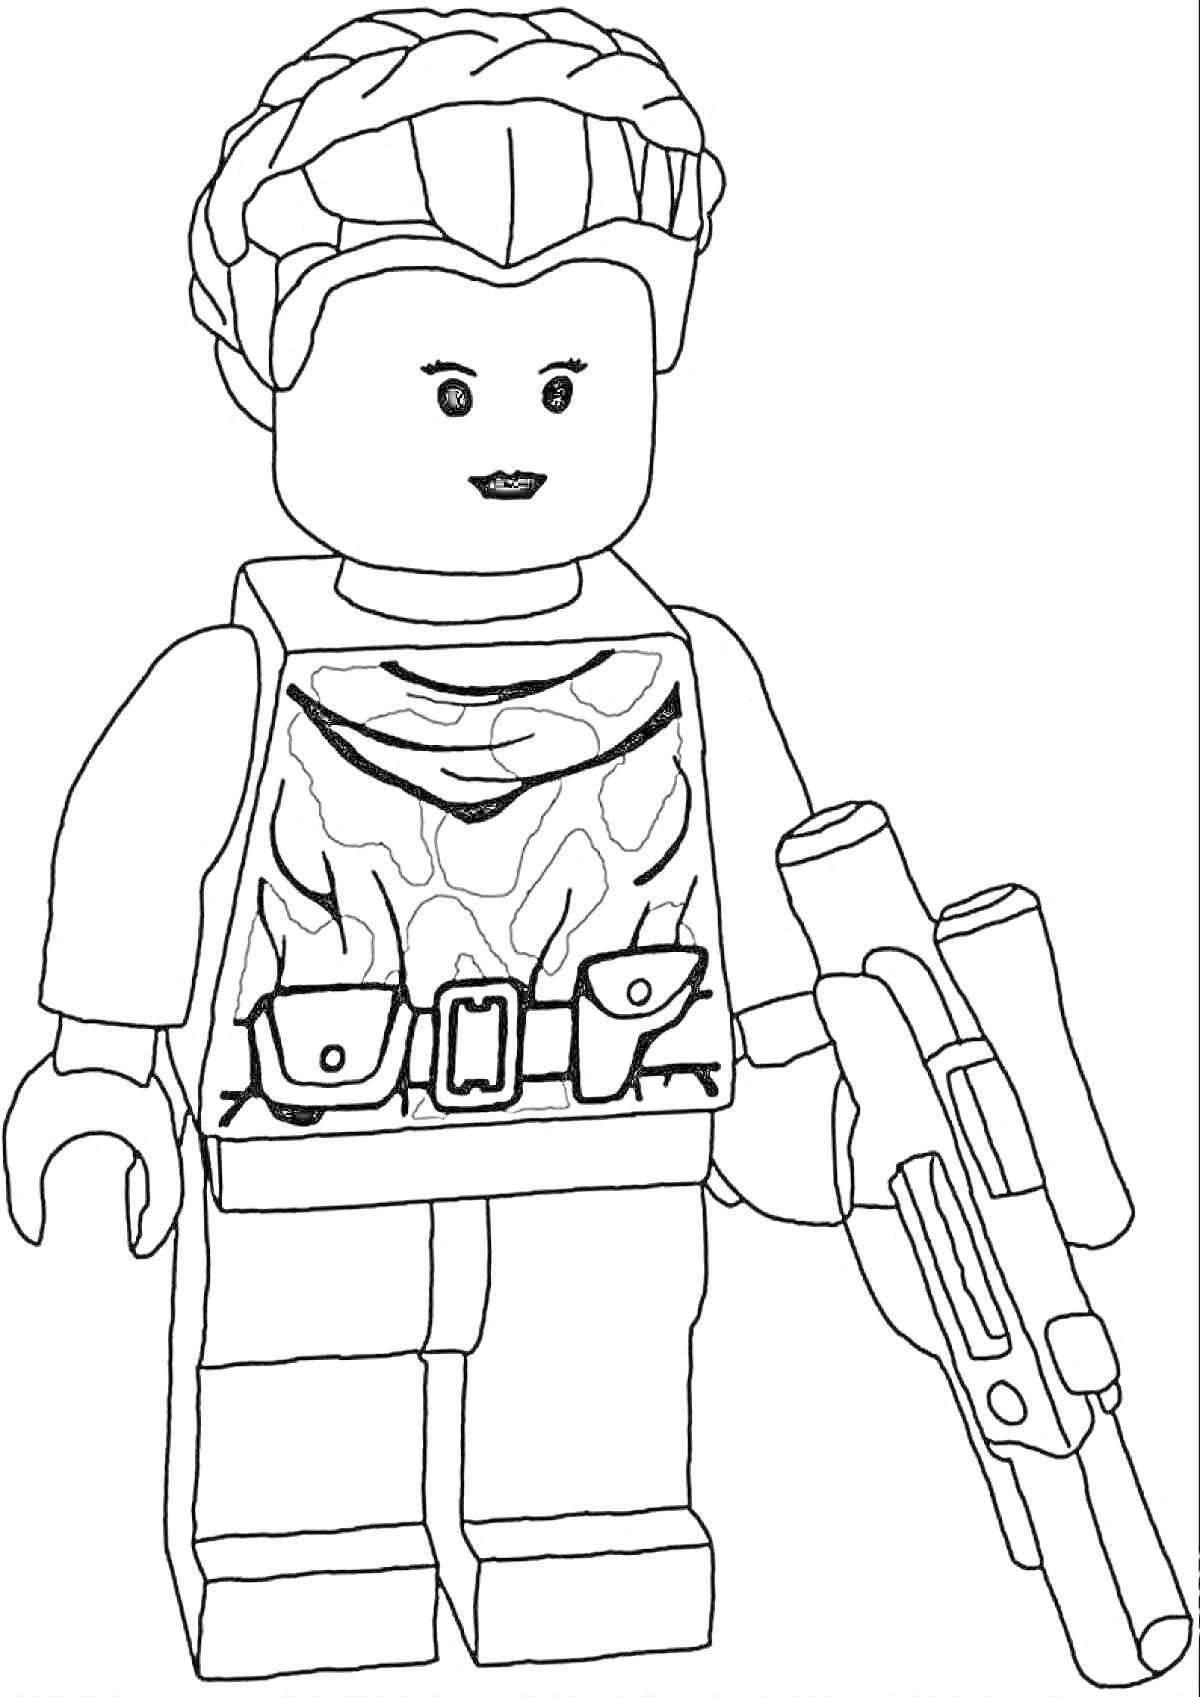 Раскраска Лего-фигурка солдата с оружием и поясом